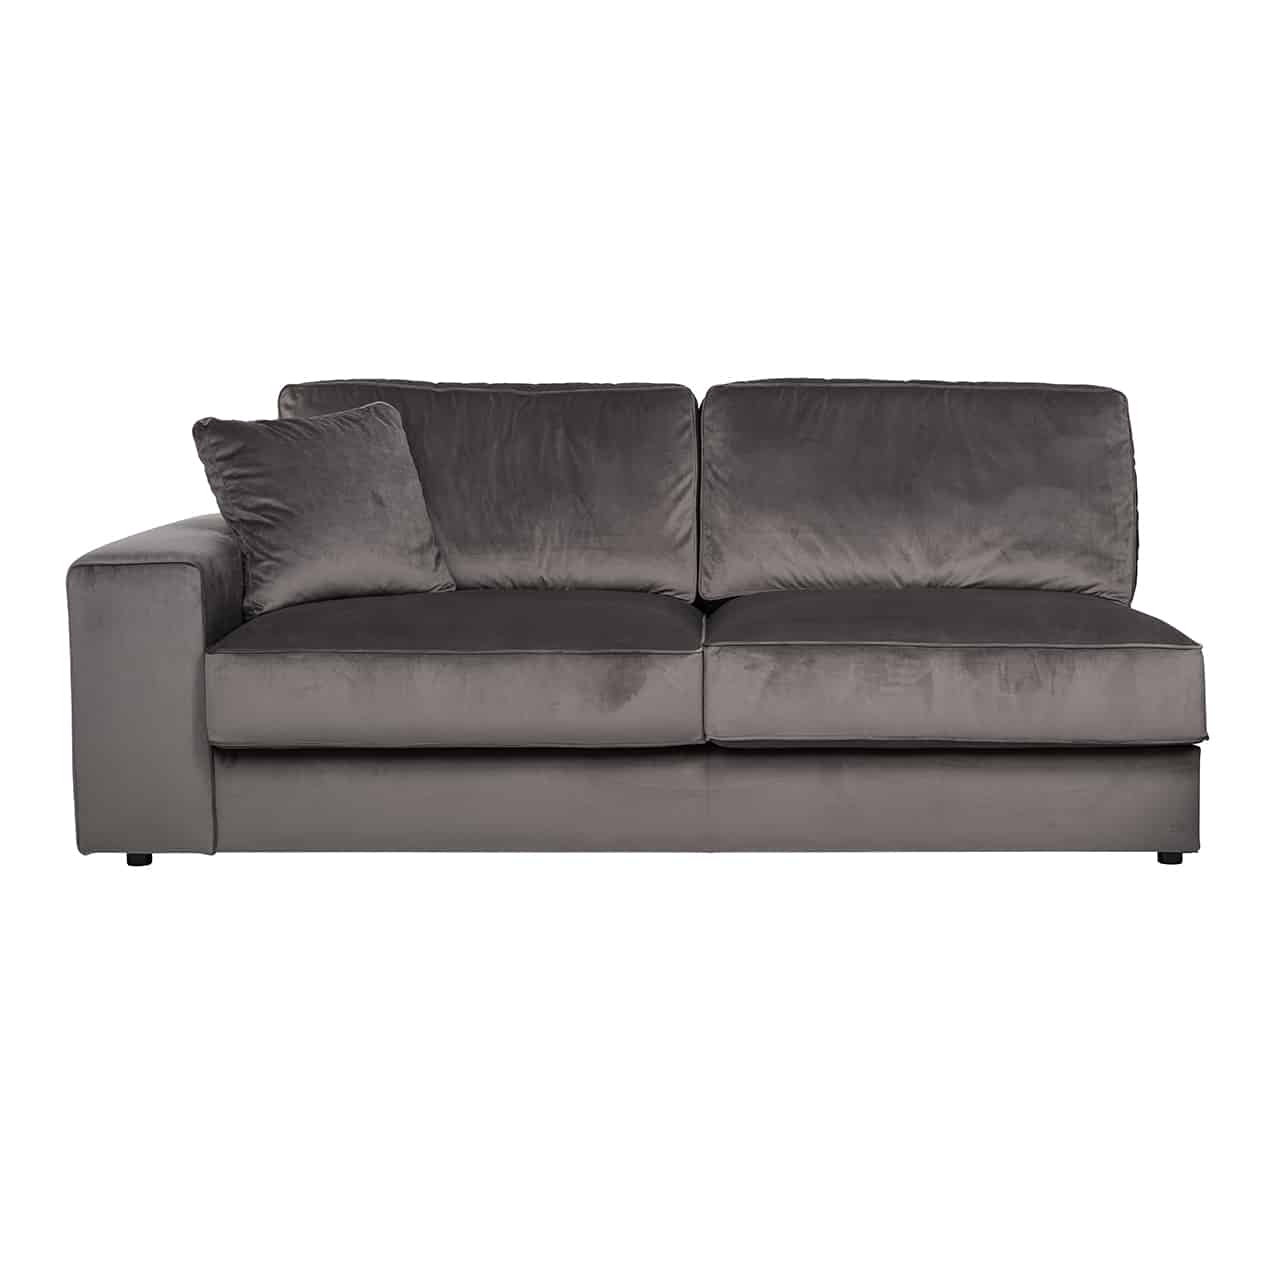 Modernes Sofa, Modul Arm links, mit khakifarbenem, glänzenden Bezug; gerade, niedrige Armlehne; zwei dicke Sitz,- und Rückenpolster, ein quadratisches Kissen in der Ecke.